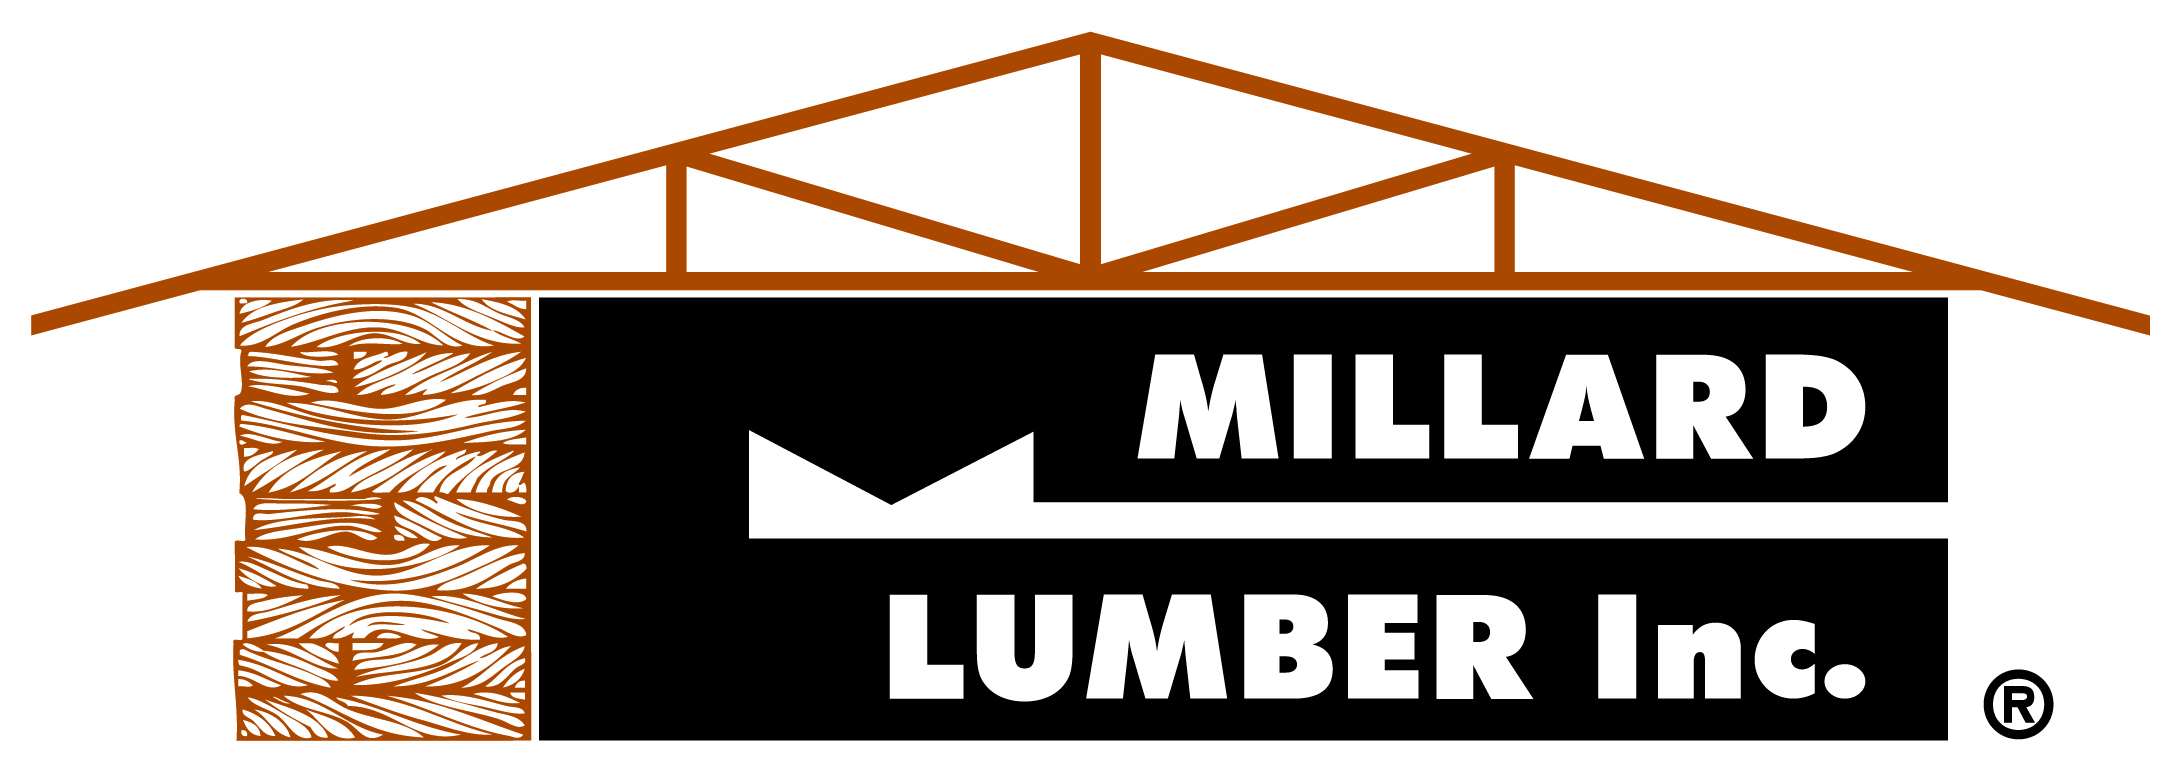 Millard Lumber - Waverly logo